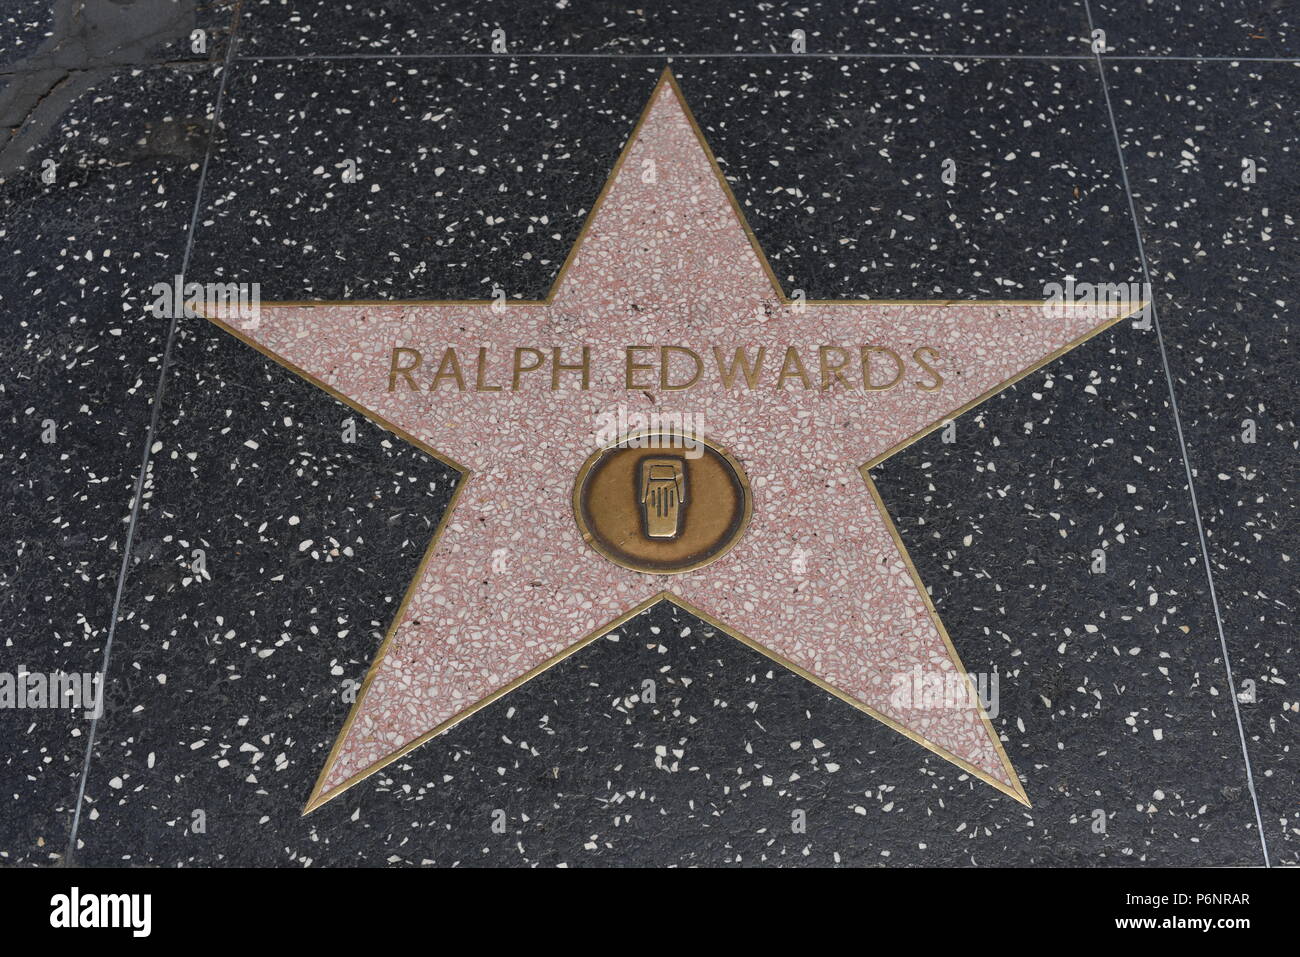 HOLLYWOOD, CA - 29 Giugno: Ralph Edwards stella sulla Hollywood Walk of Fame in Hollywood, la California il 29 giugno 2018. Foto Stock